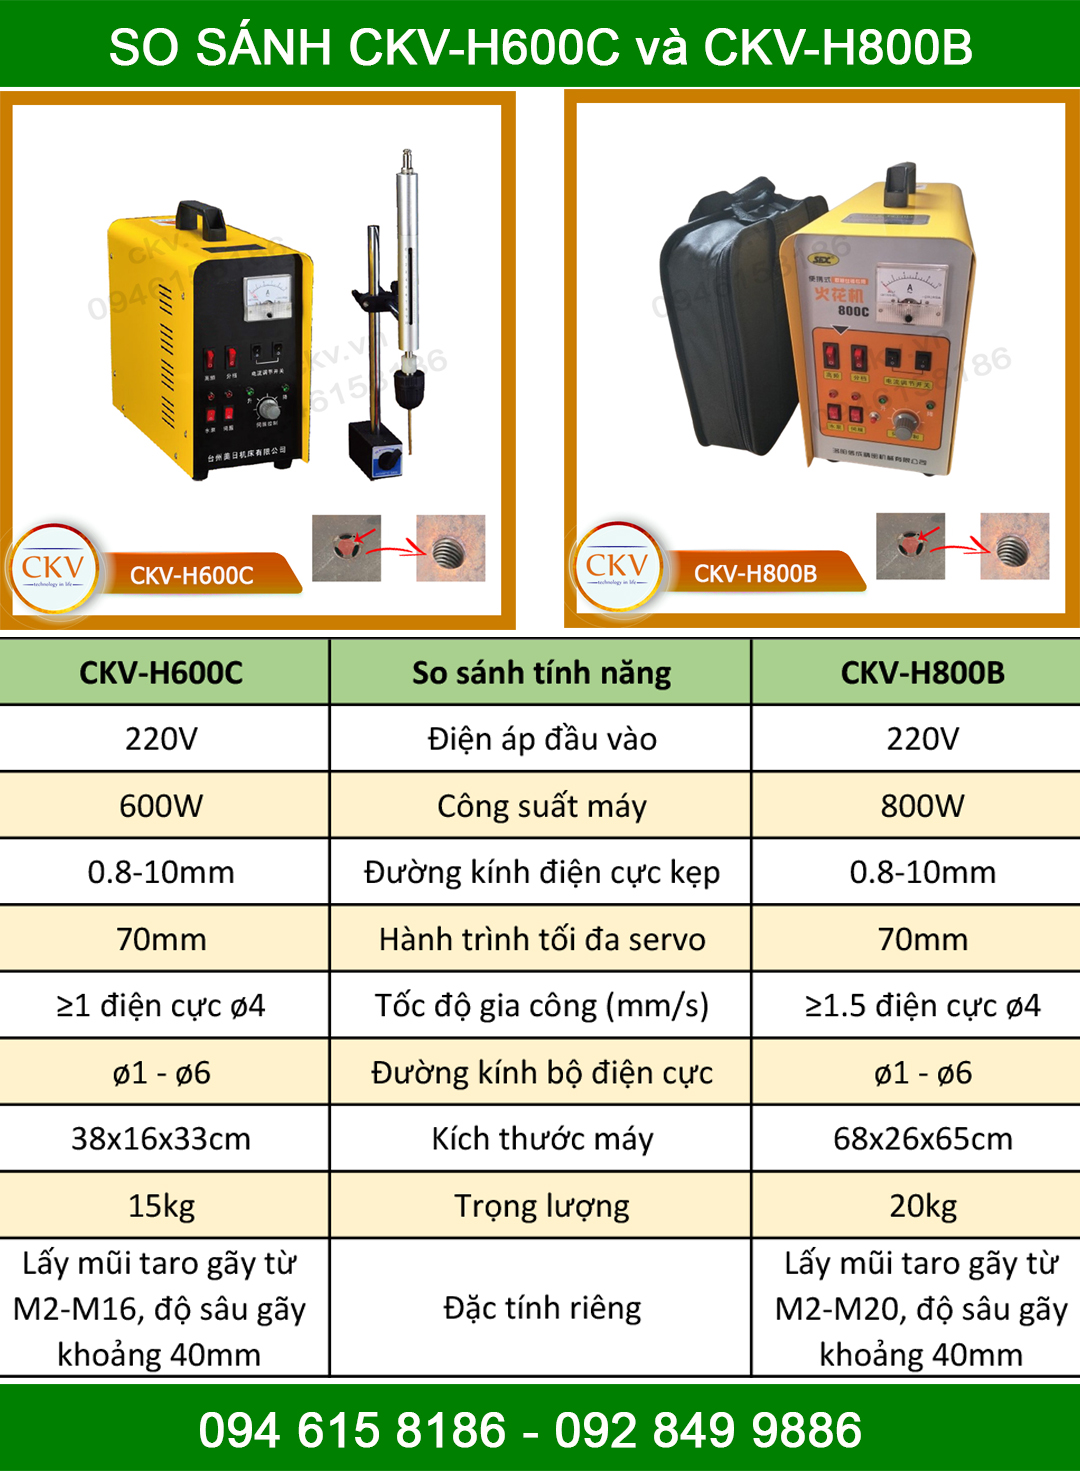 So sánh CKV-H600C và CKV-H800B